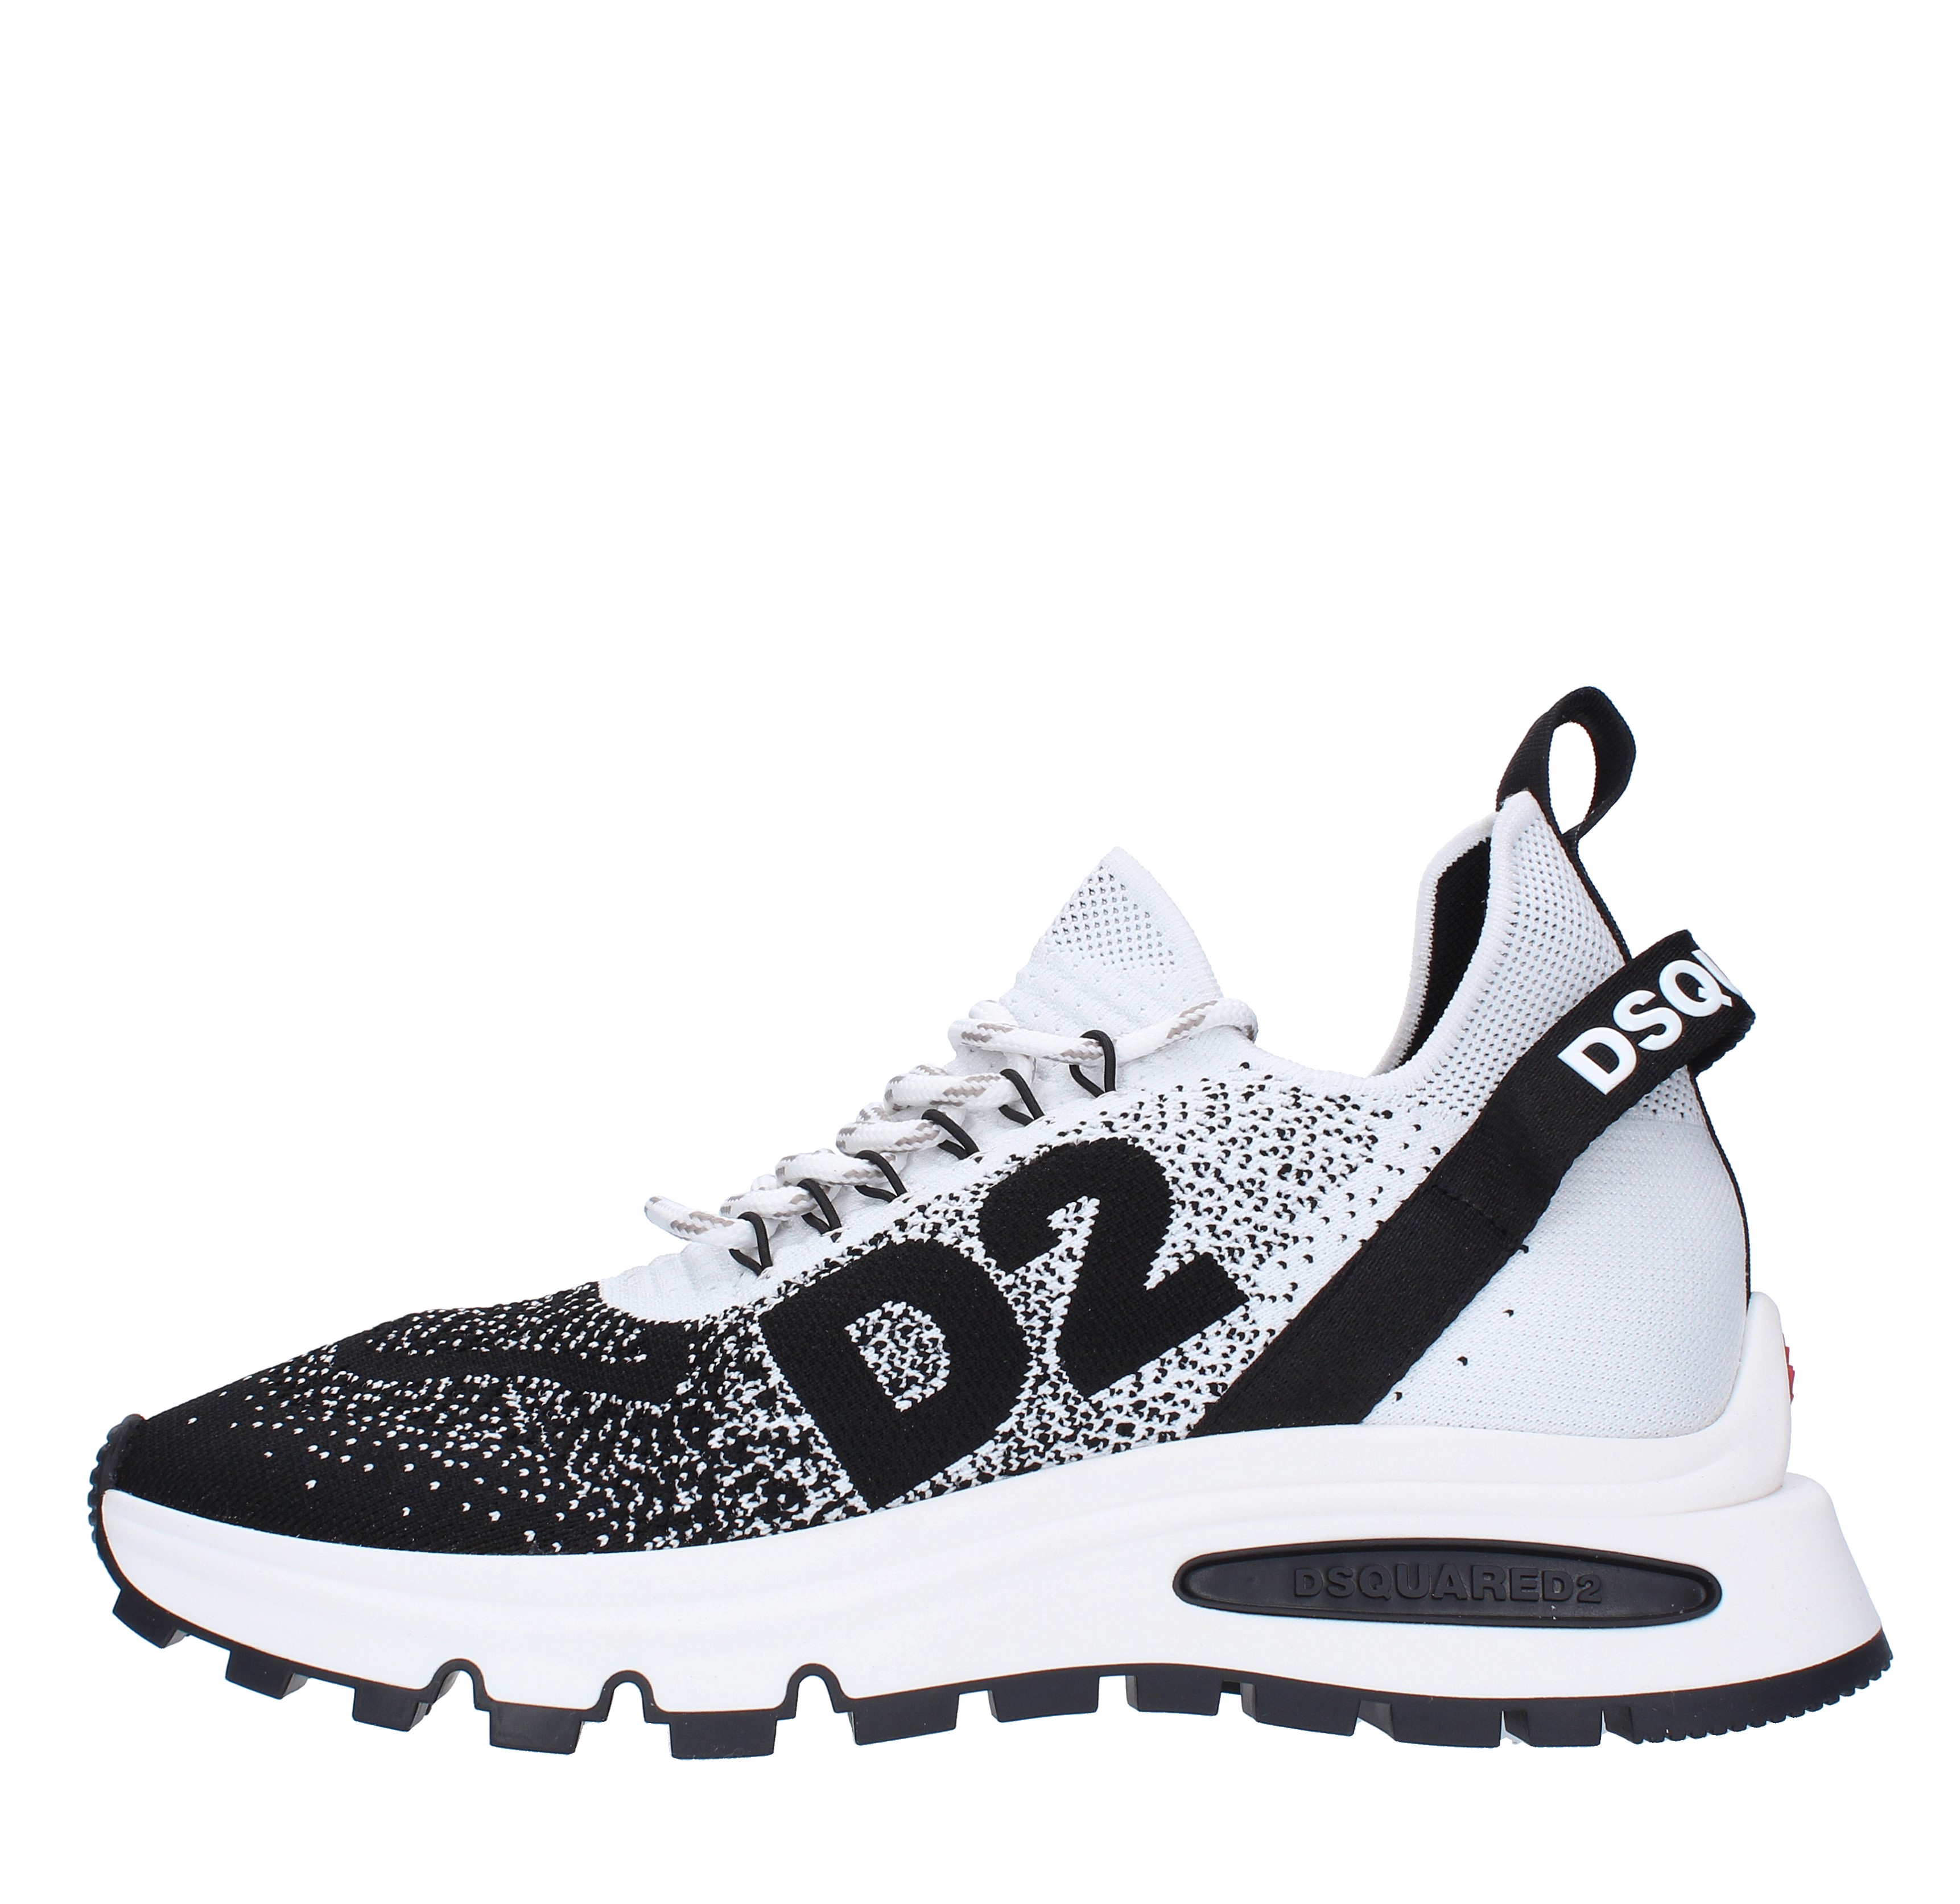 Sneakers DSQUARED2 Run DS2 in maglia elasticizzata - DSQUARED2 - Ginevra  calzature